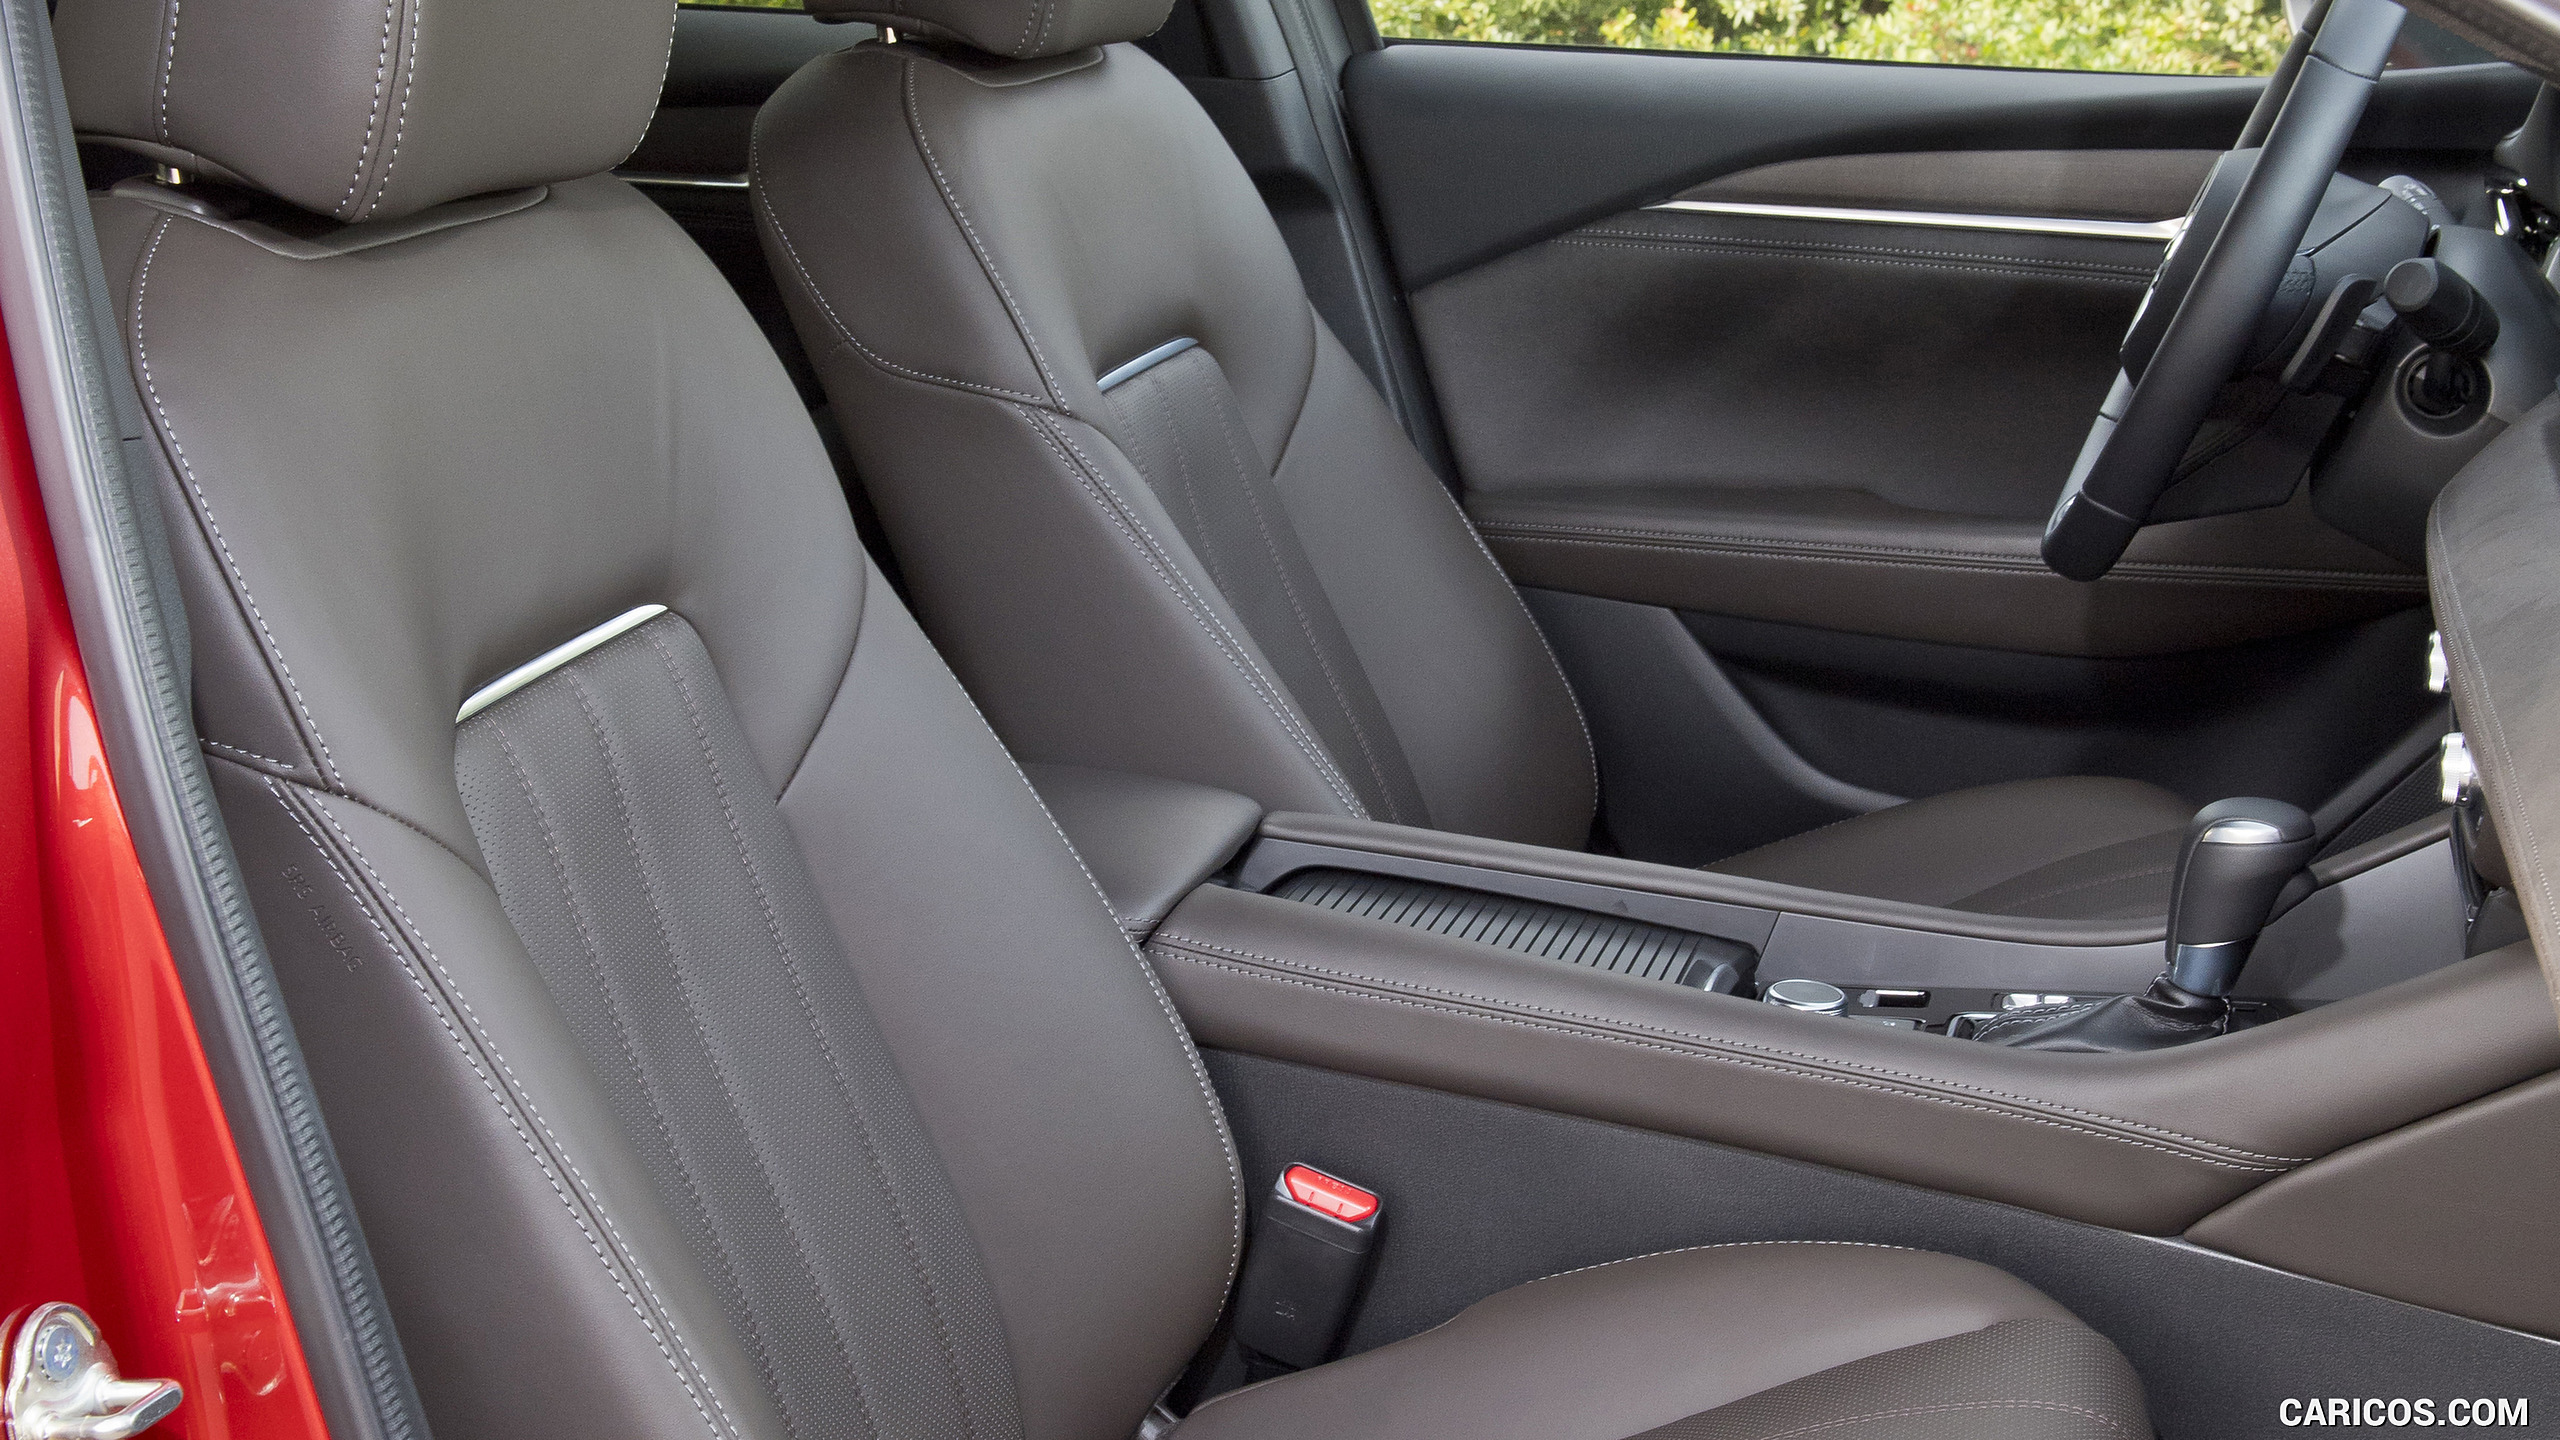 2018 Mazda6 Wagon - Interior, Front Seats, #233 of 235